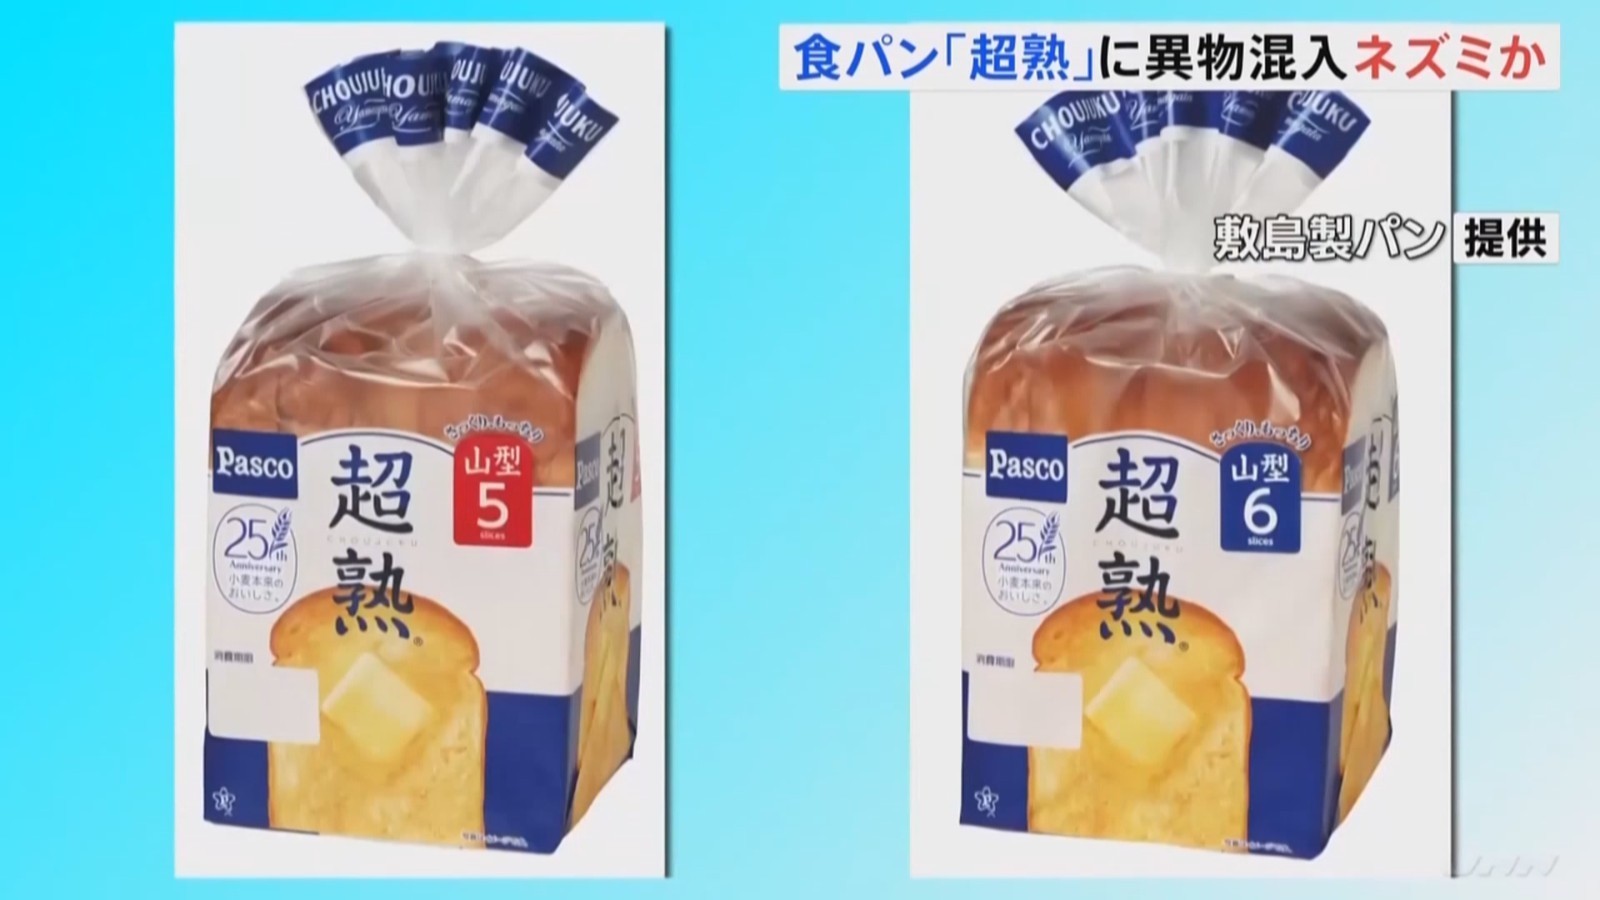 日本知名面包公司就产品中混入死老鼠致歉